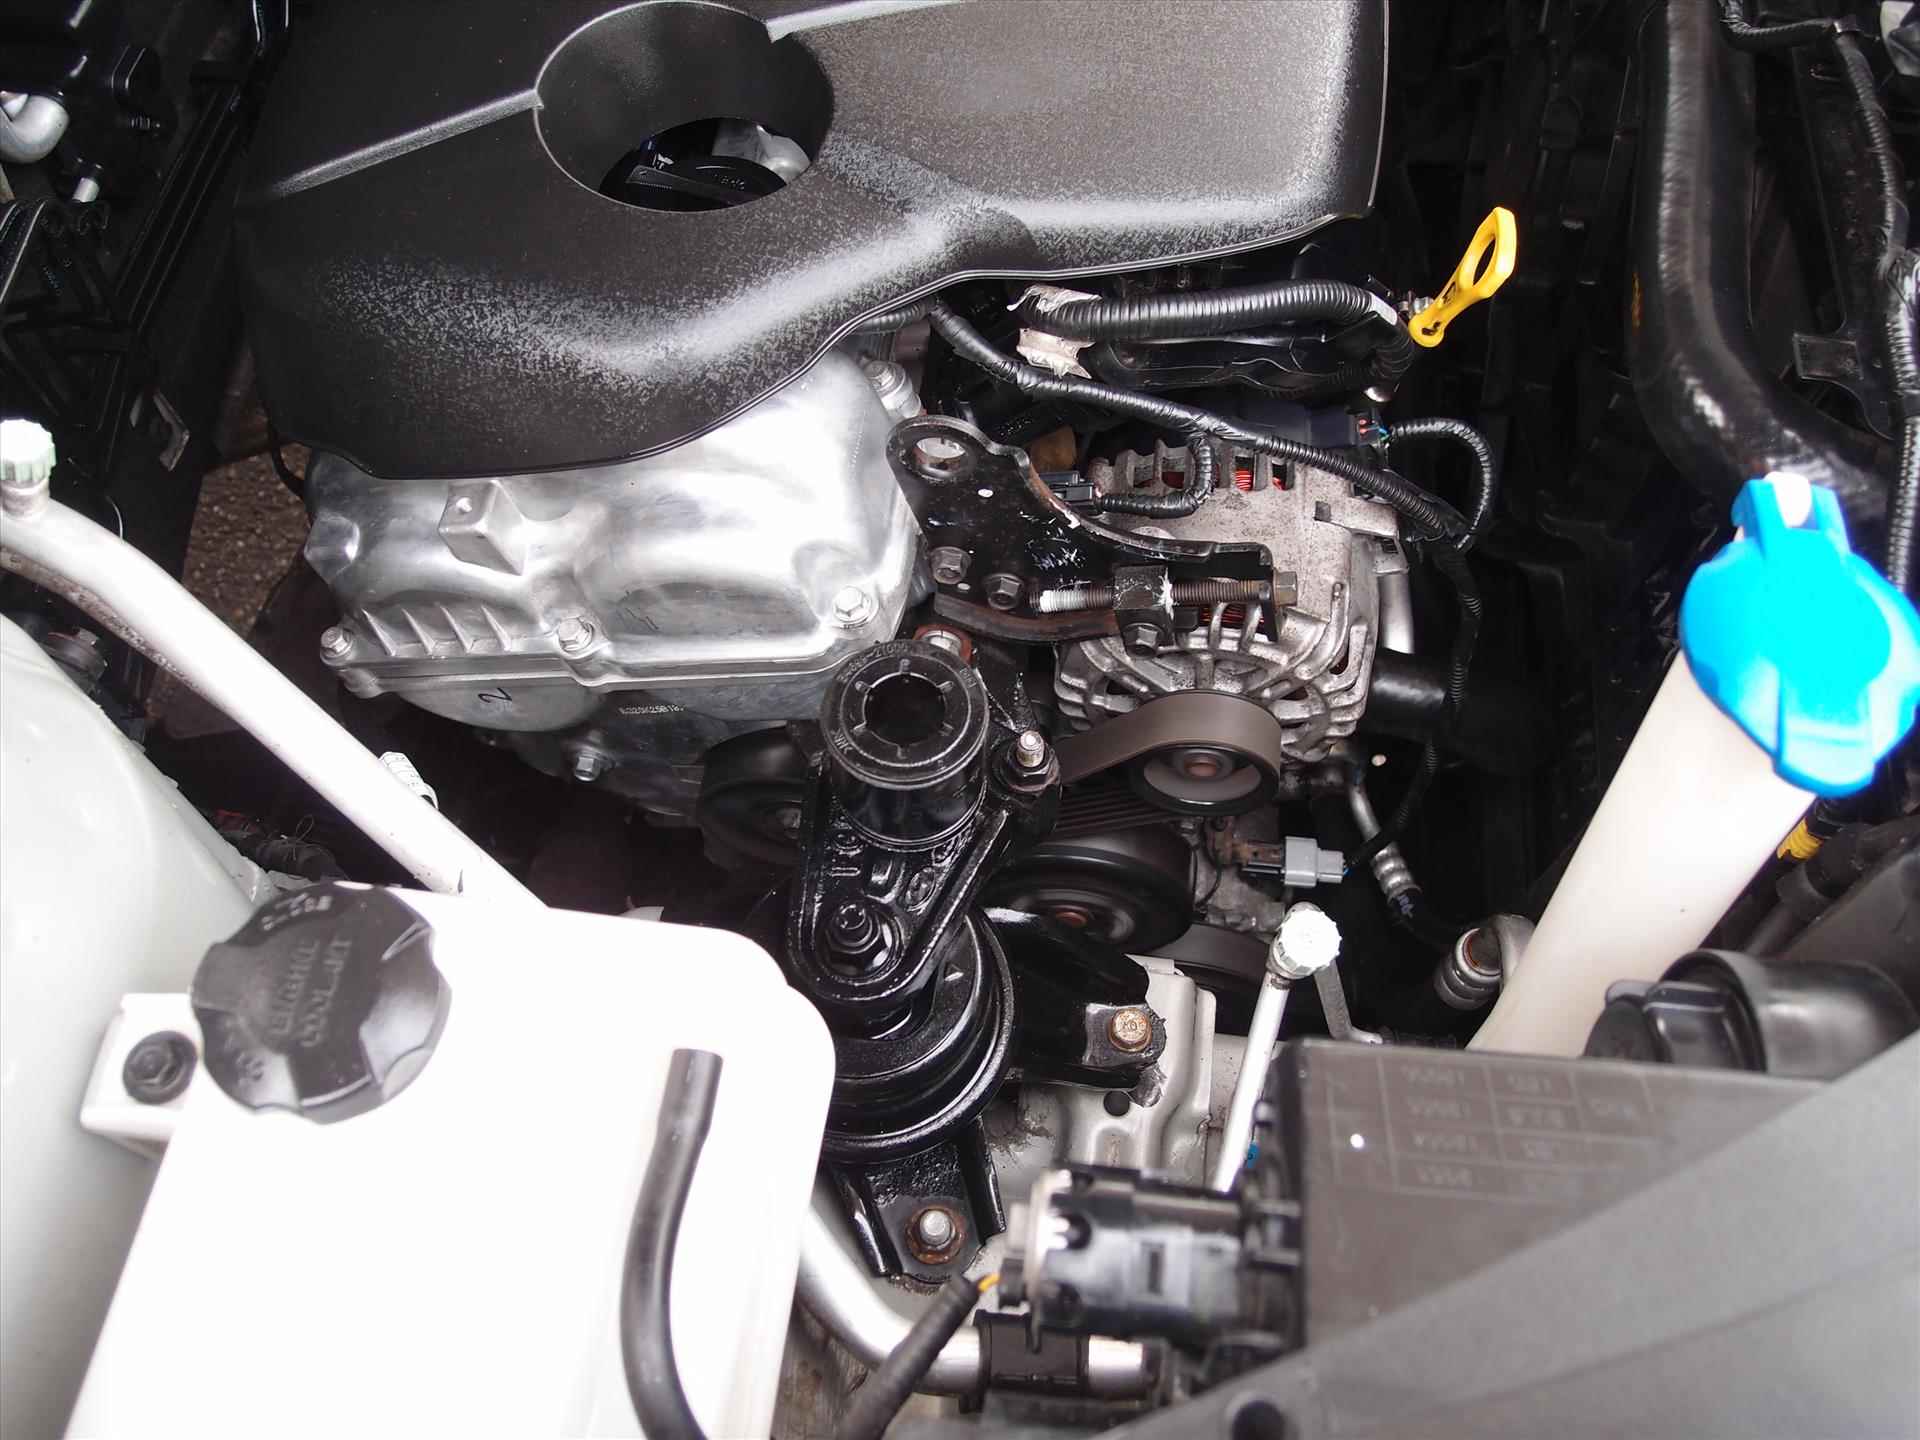 Kia Sportage 1.6 GDI 135pk Dynamics in  " New  " staat met nieuwe motor. - 19/22